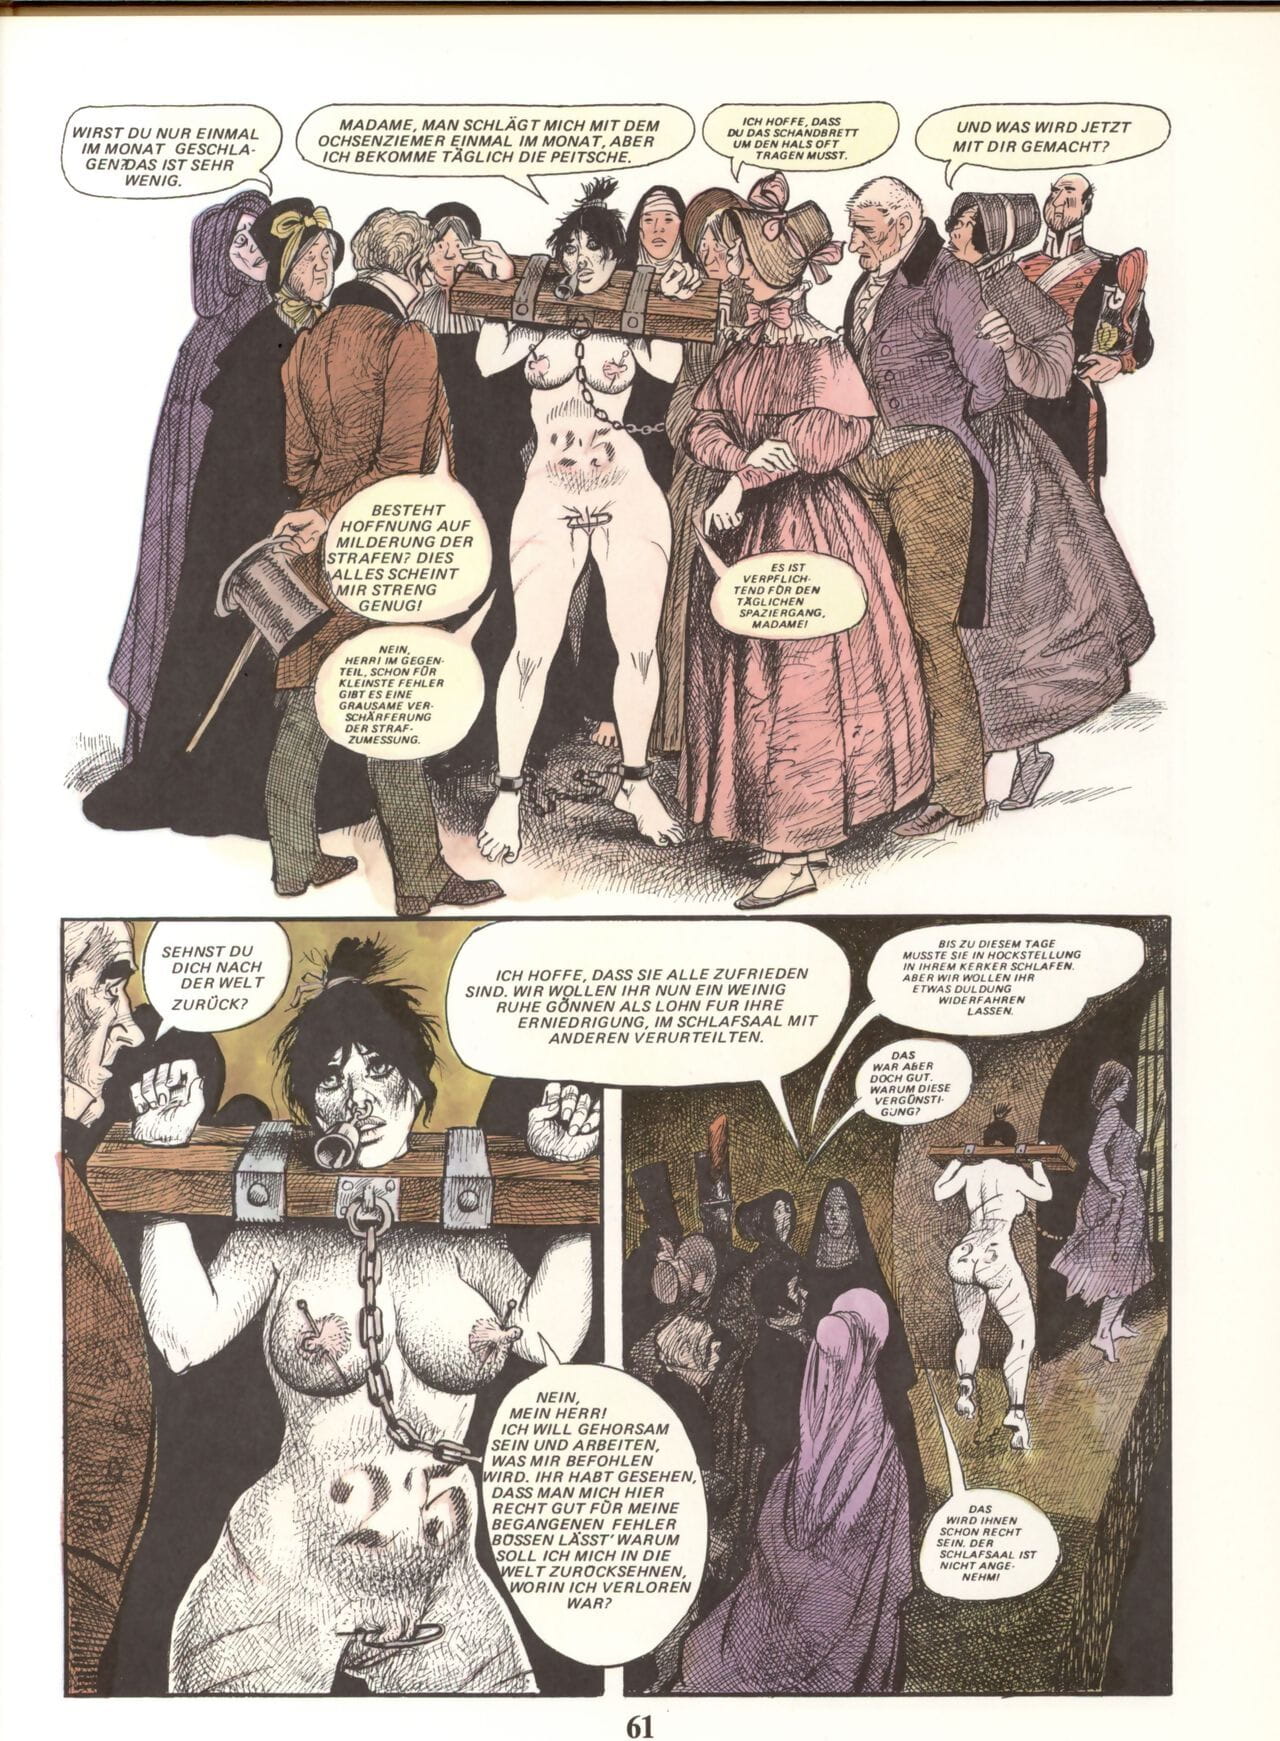 Marie Gabrielle De Saint eutrope #02 phần 5 page 1